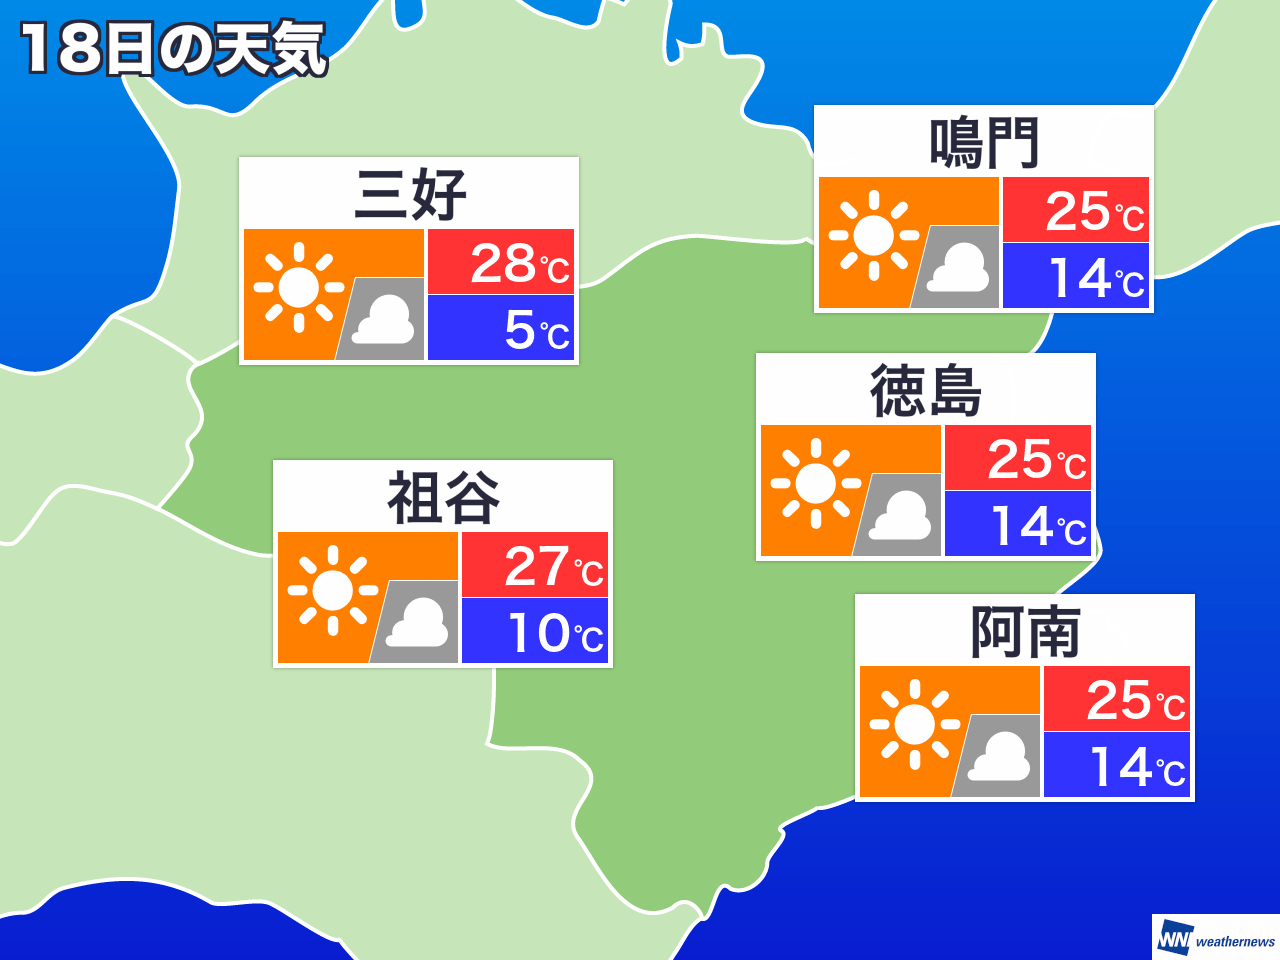 2月11日 火 徳島県の今日の天気 ウェザーニュース